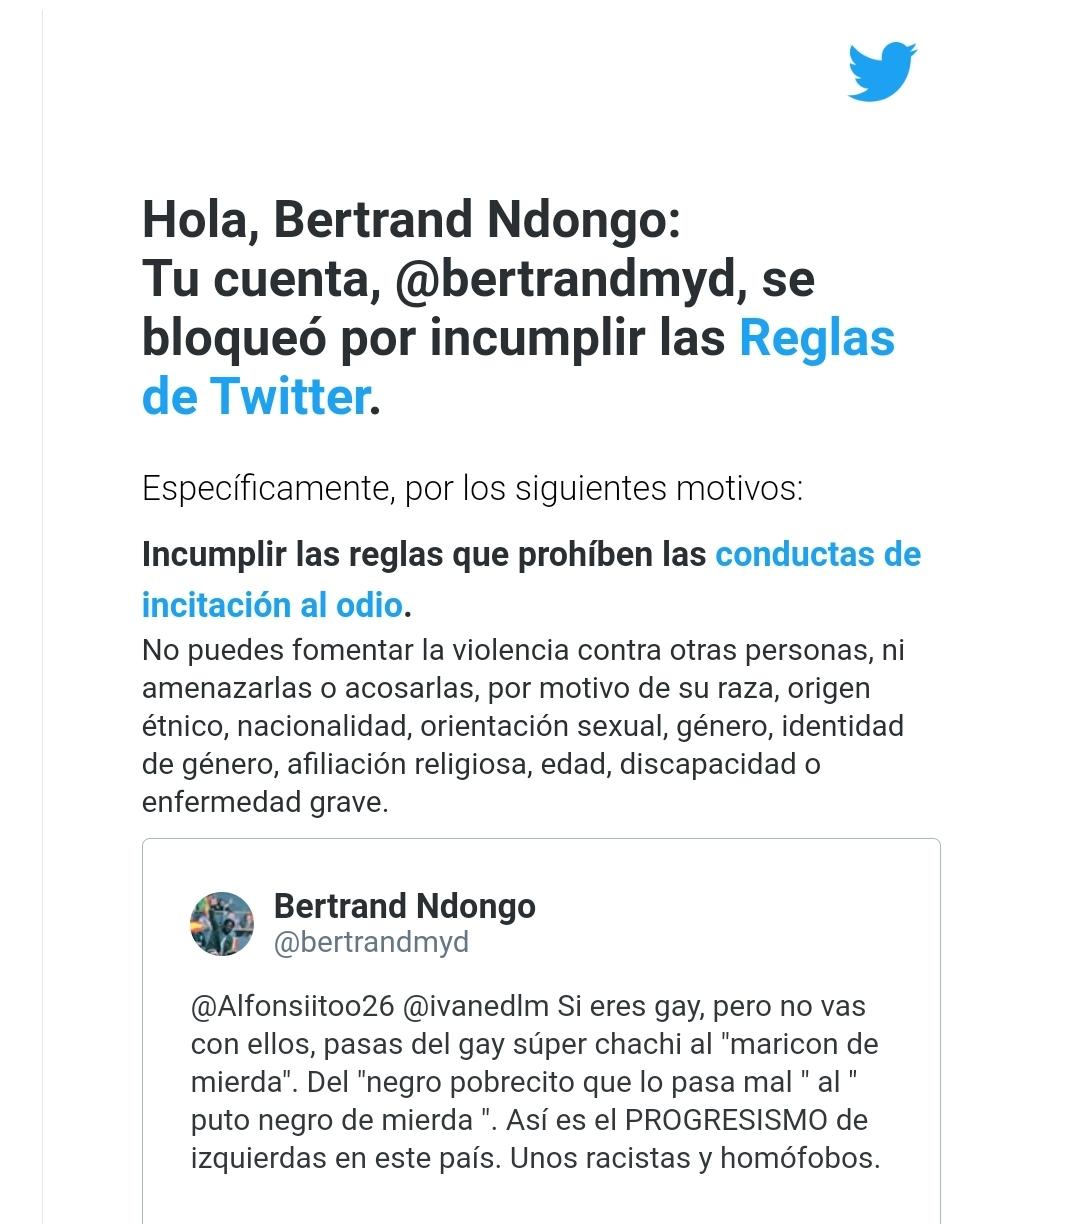 Twitter bloquea la cuenta de Ndongo